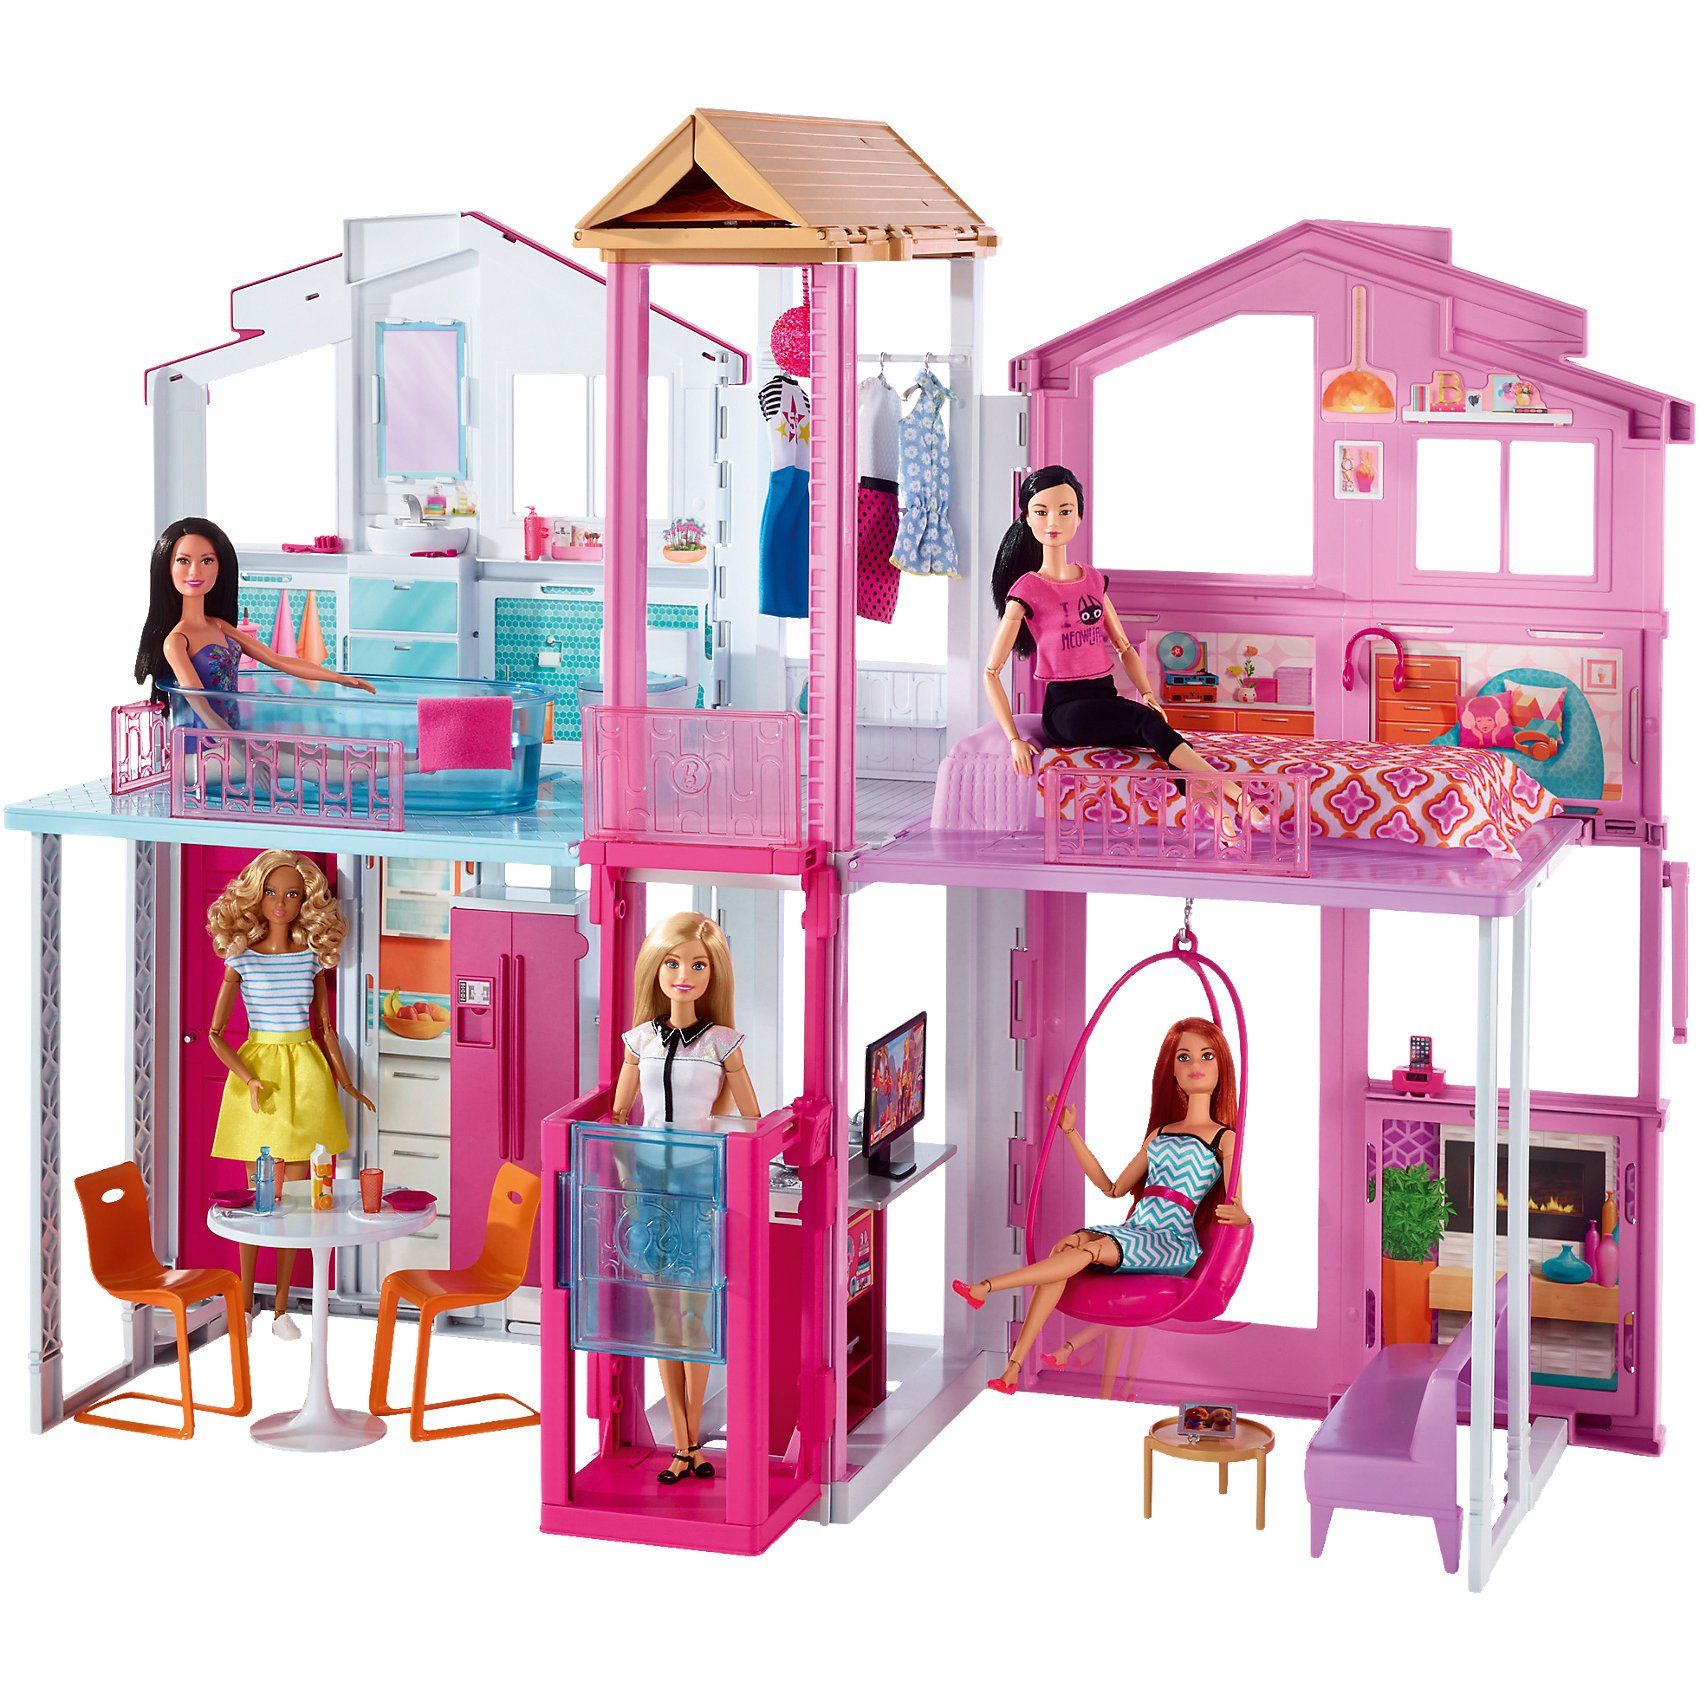 Большой набор кукол. Barbie dly32 Барби городской дом Малибу. Городской дом для Барби Малибу dly 32. Barbie кукольный домик Малибу. Barbie кукольный домик "Малибу" fxg57.